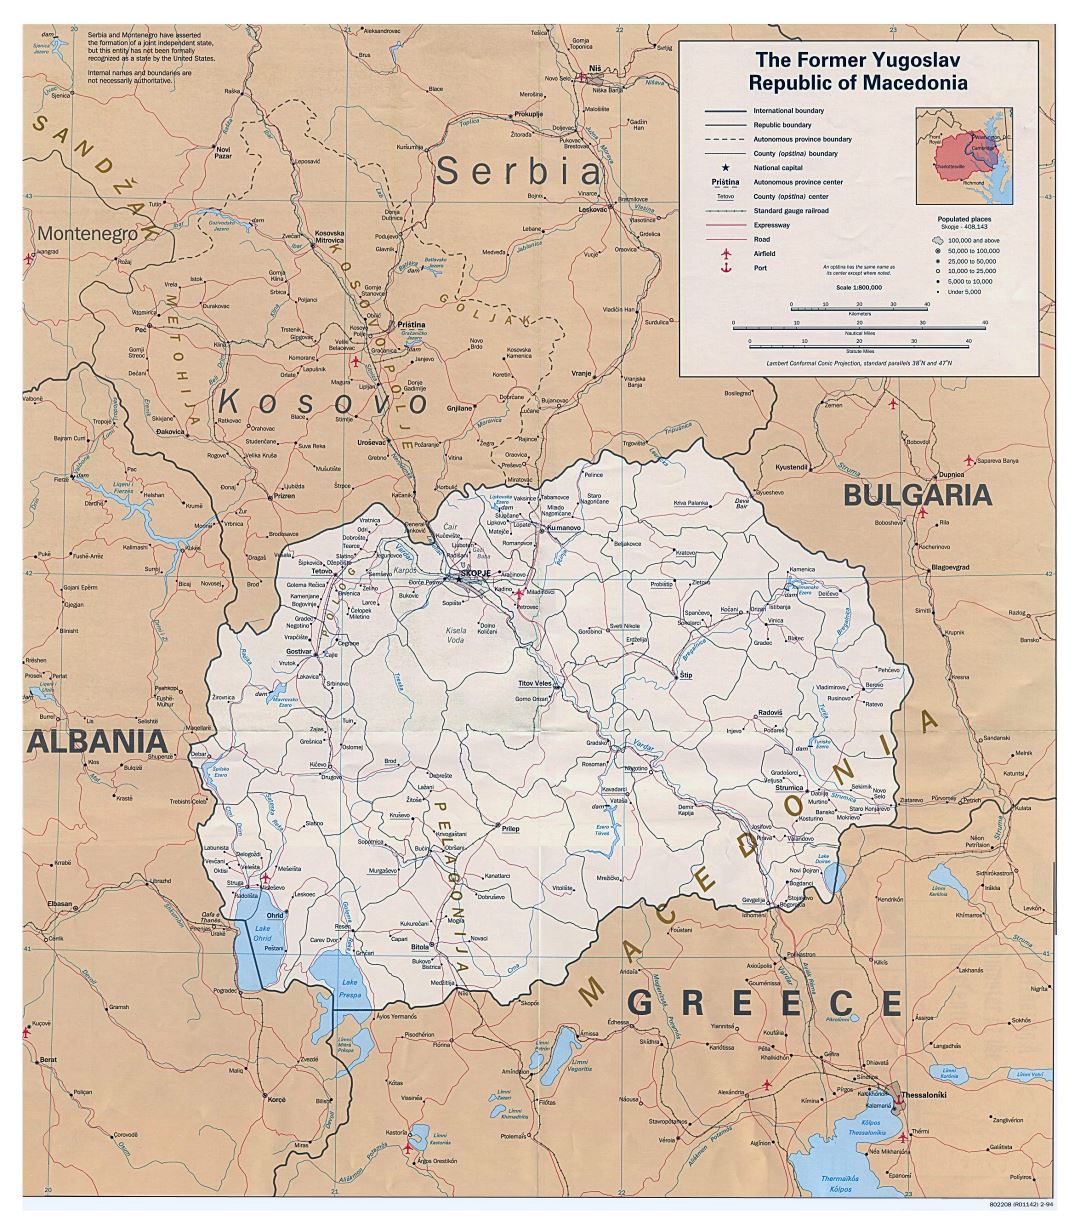 Grande detallado mapa política de Macedonia con carreteras, ferrocarriles, aeropuertos y ciudades - 1994